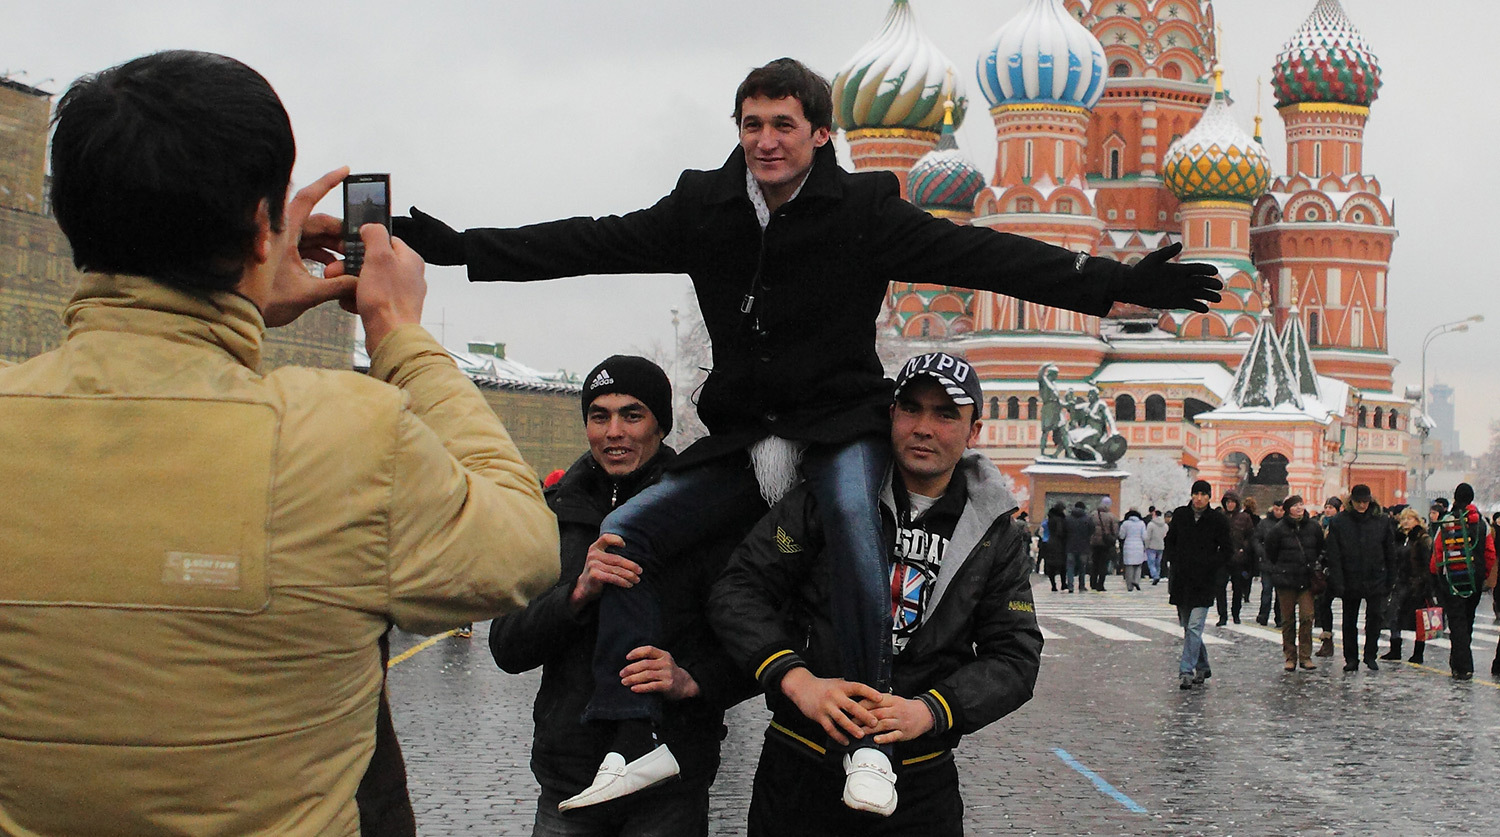 Таджики не любят узбеков. Мигранты из средней Азии в Москве. Чурки на красной площади. Кавказцы на красной площади. Гастарбайтеры на красной площади.